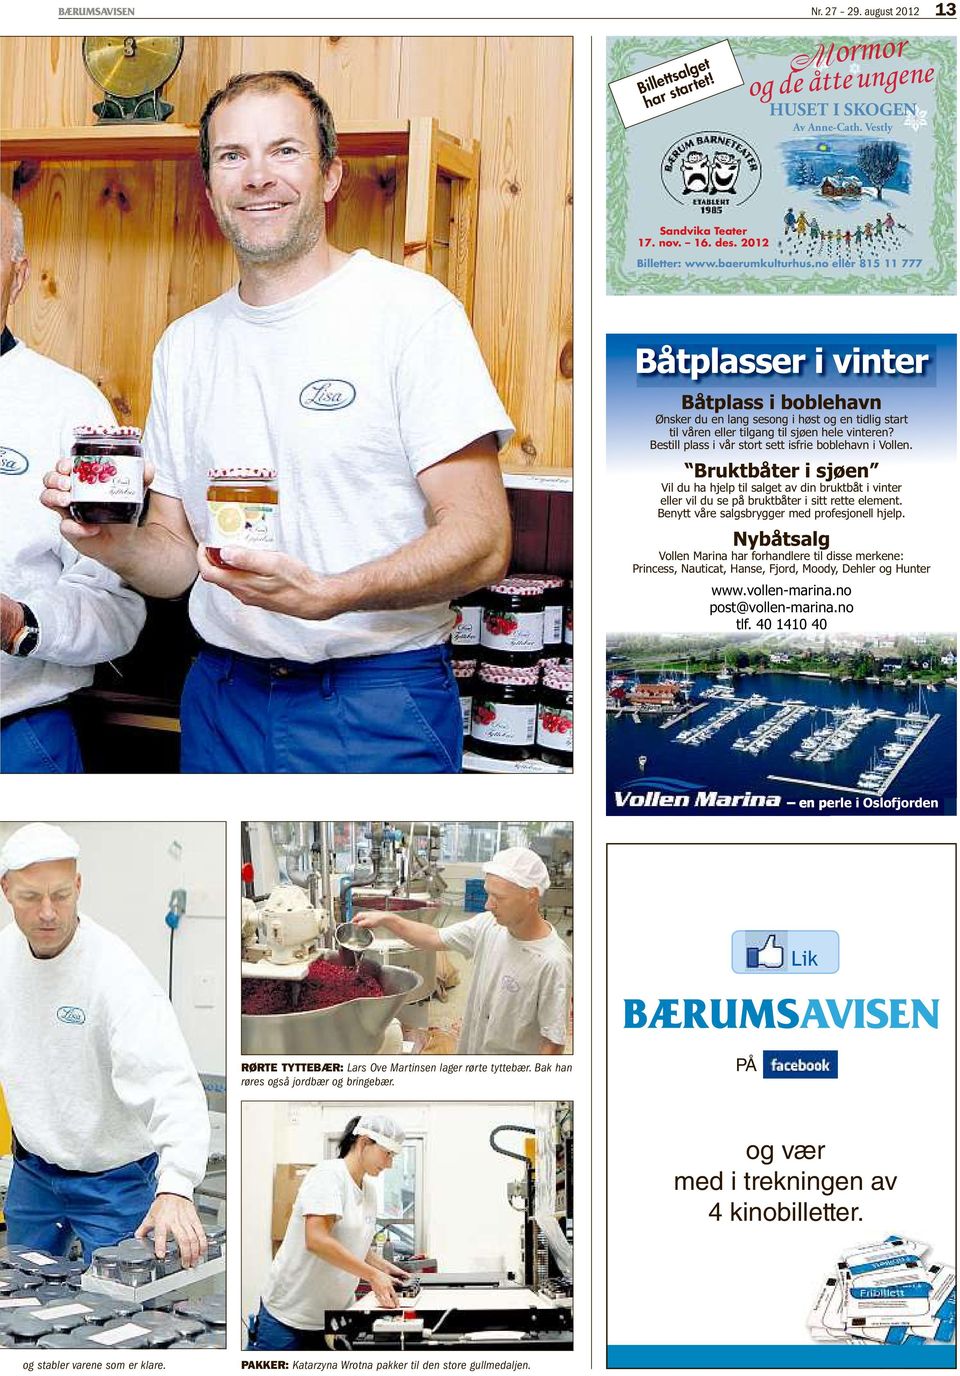 no eller 815 11 777 RØRTE TYTTEBÆR: Lars Ove Martinsen lager rørte tyttebær.